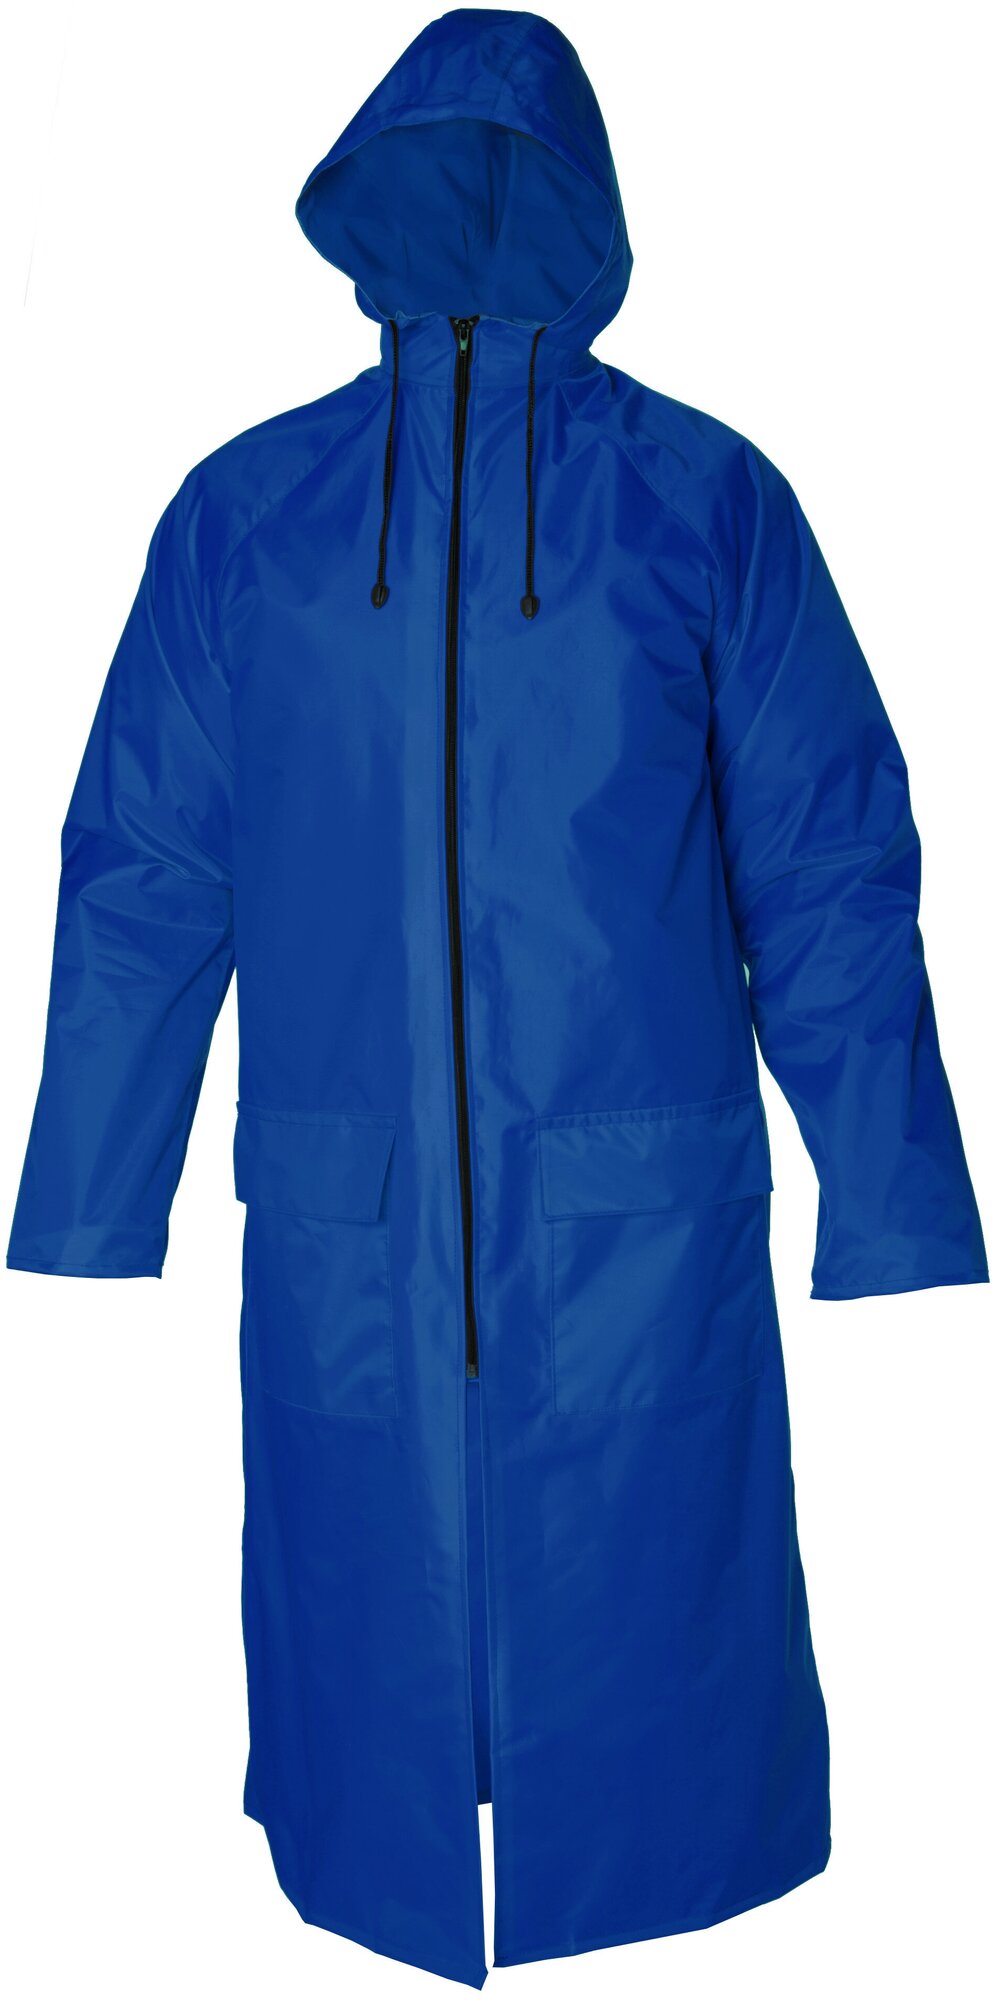 Плащ-дождевик серия "Скат" с застежкой на молнии и накладными карманами с влагозащитными клапанами цвет: Синий размер XL(104-108) ростовка (182-188)